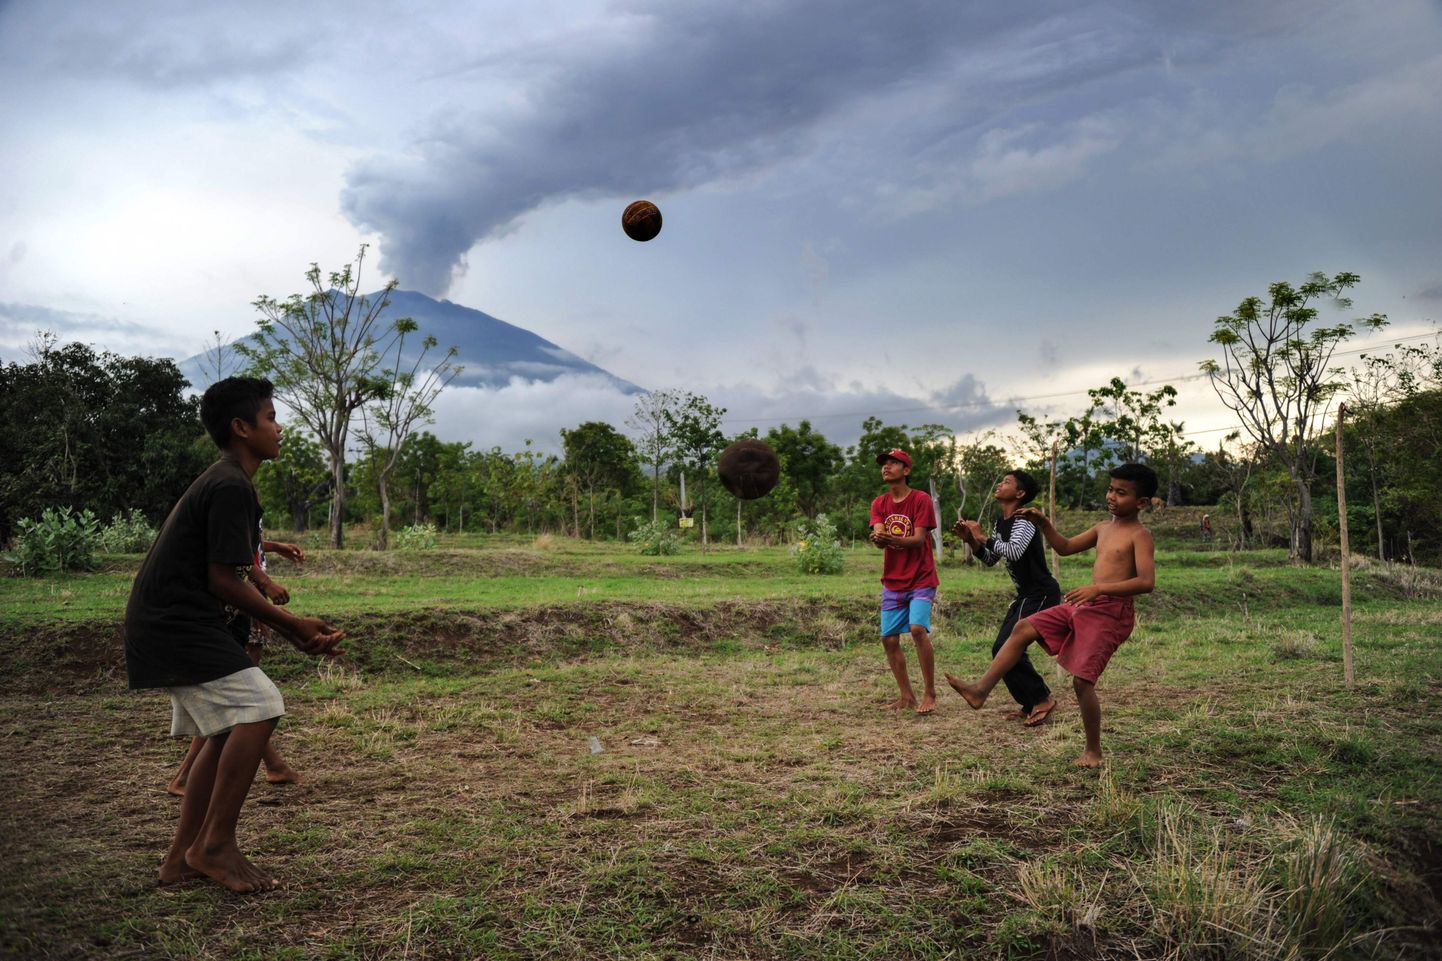 Bali kaks vulkaani pakuvad küll silmailu, kuid kohalikele võivad need tähendada ka korralikku peavalu. Nii näiteks juhtus mullu novembris, kui purskama hakanud Agung turismisektorile kõvasti kahju tegi.